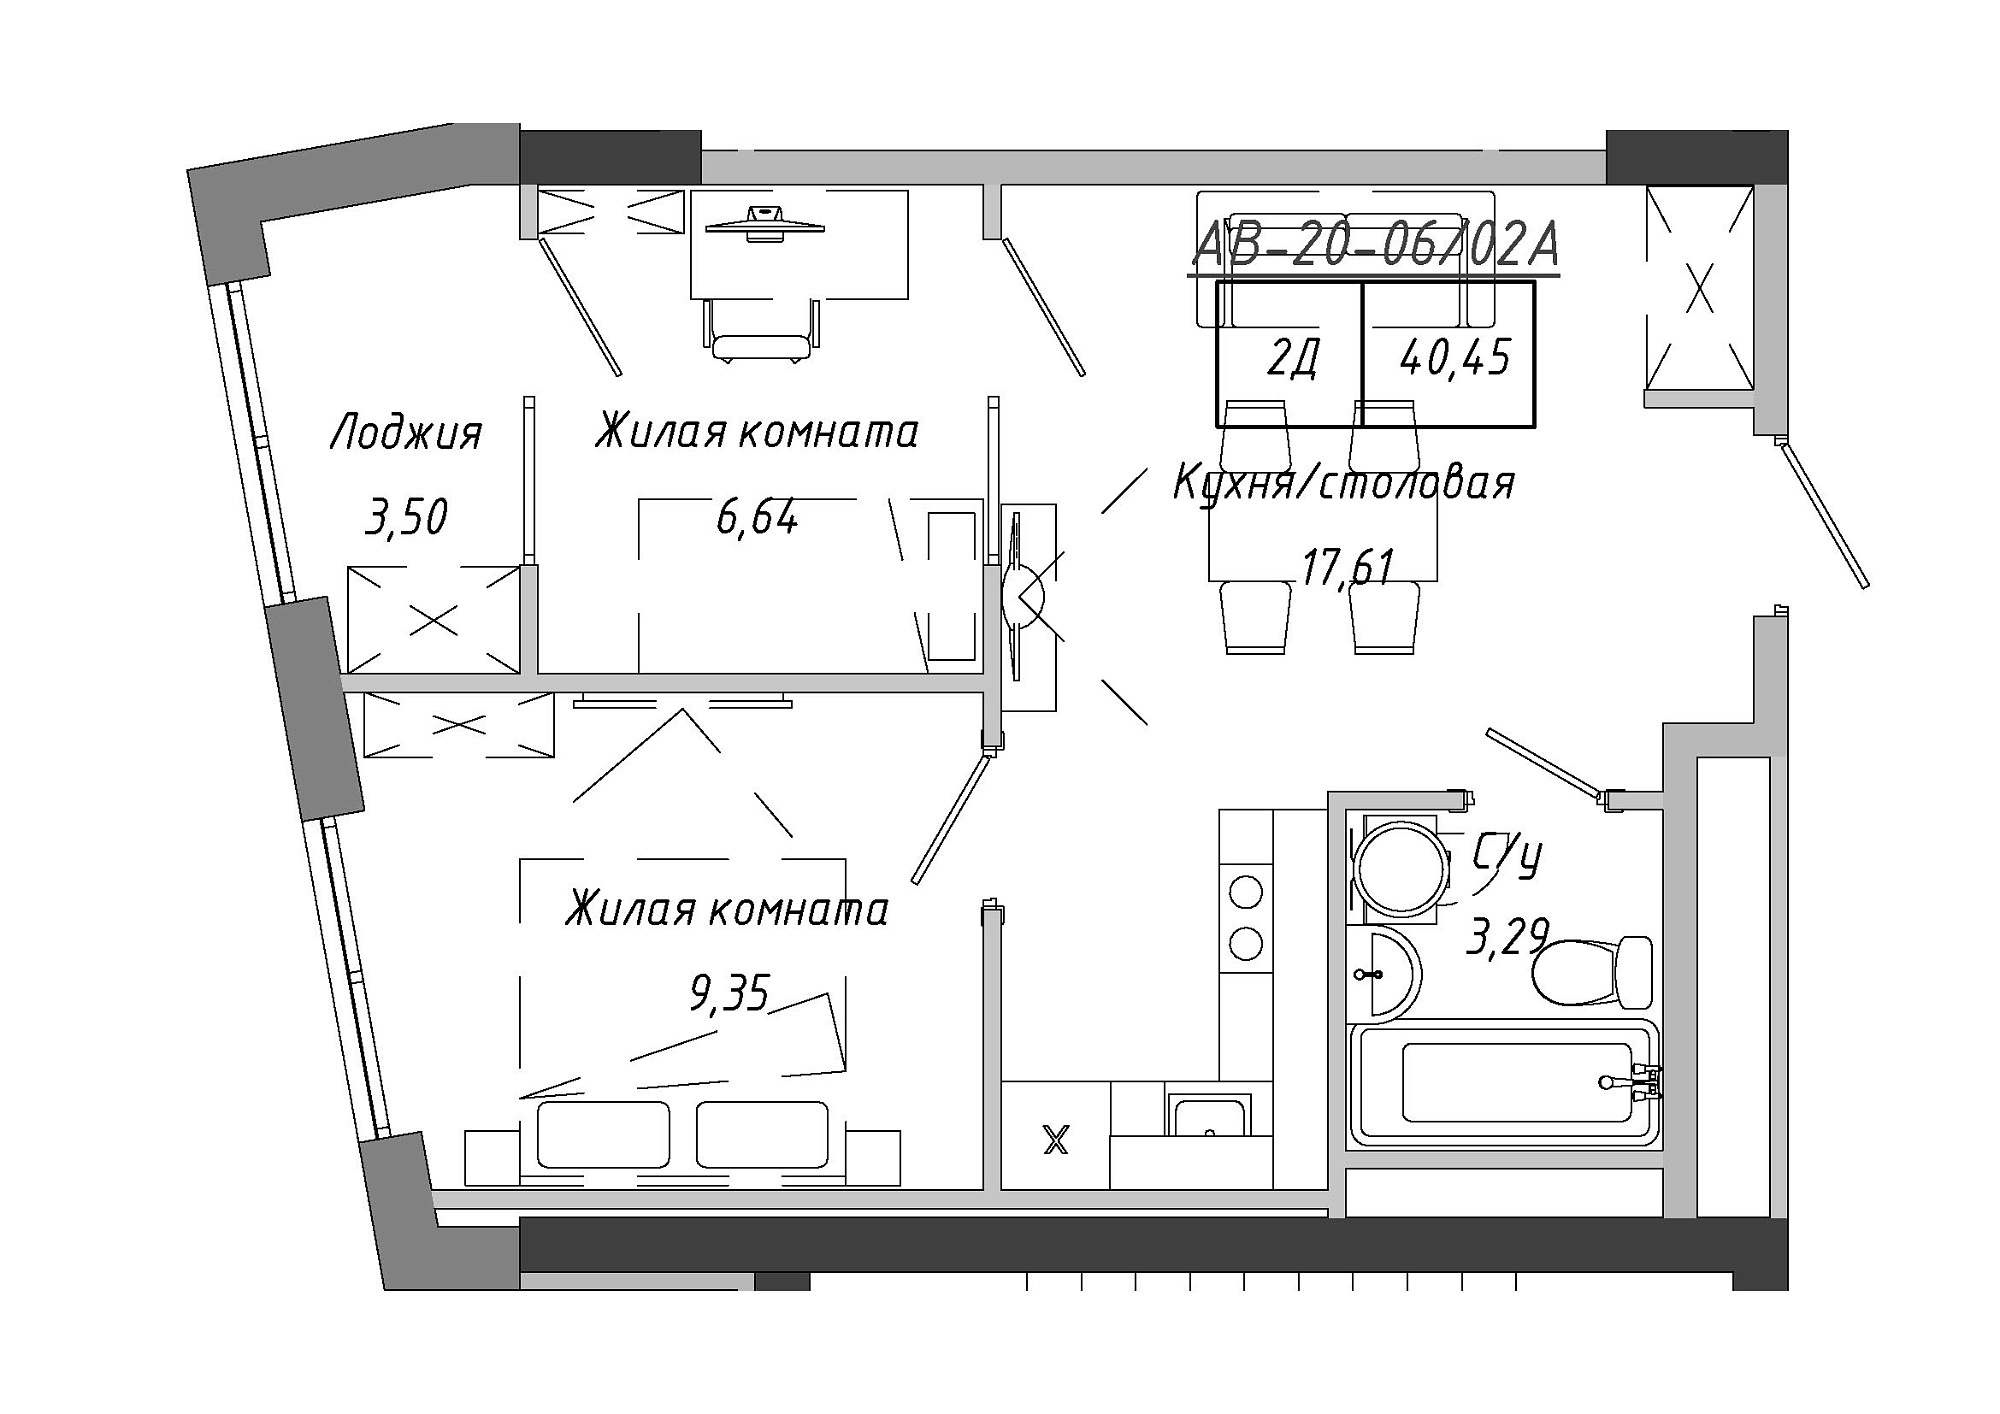 Планування 2-к квартира площею 41.9м2, AB-20-06/0002а.